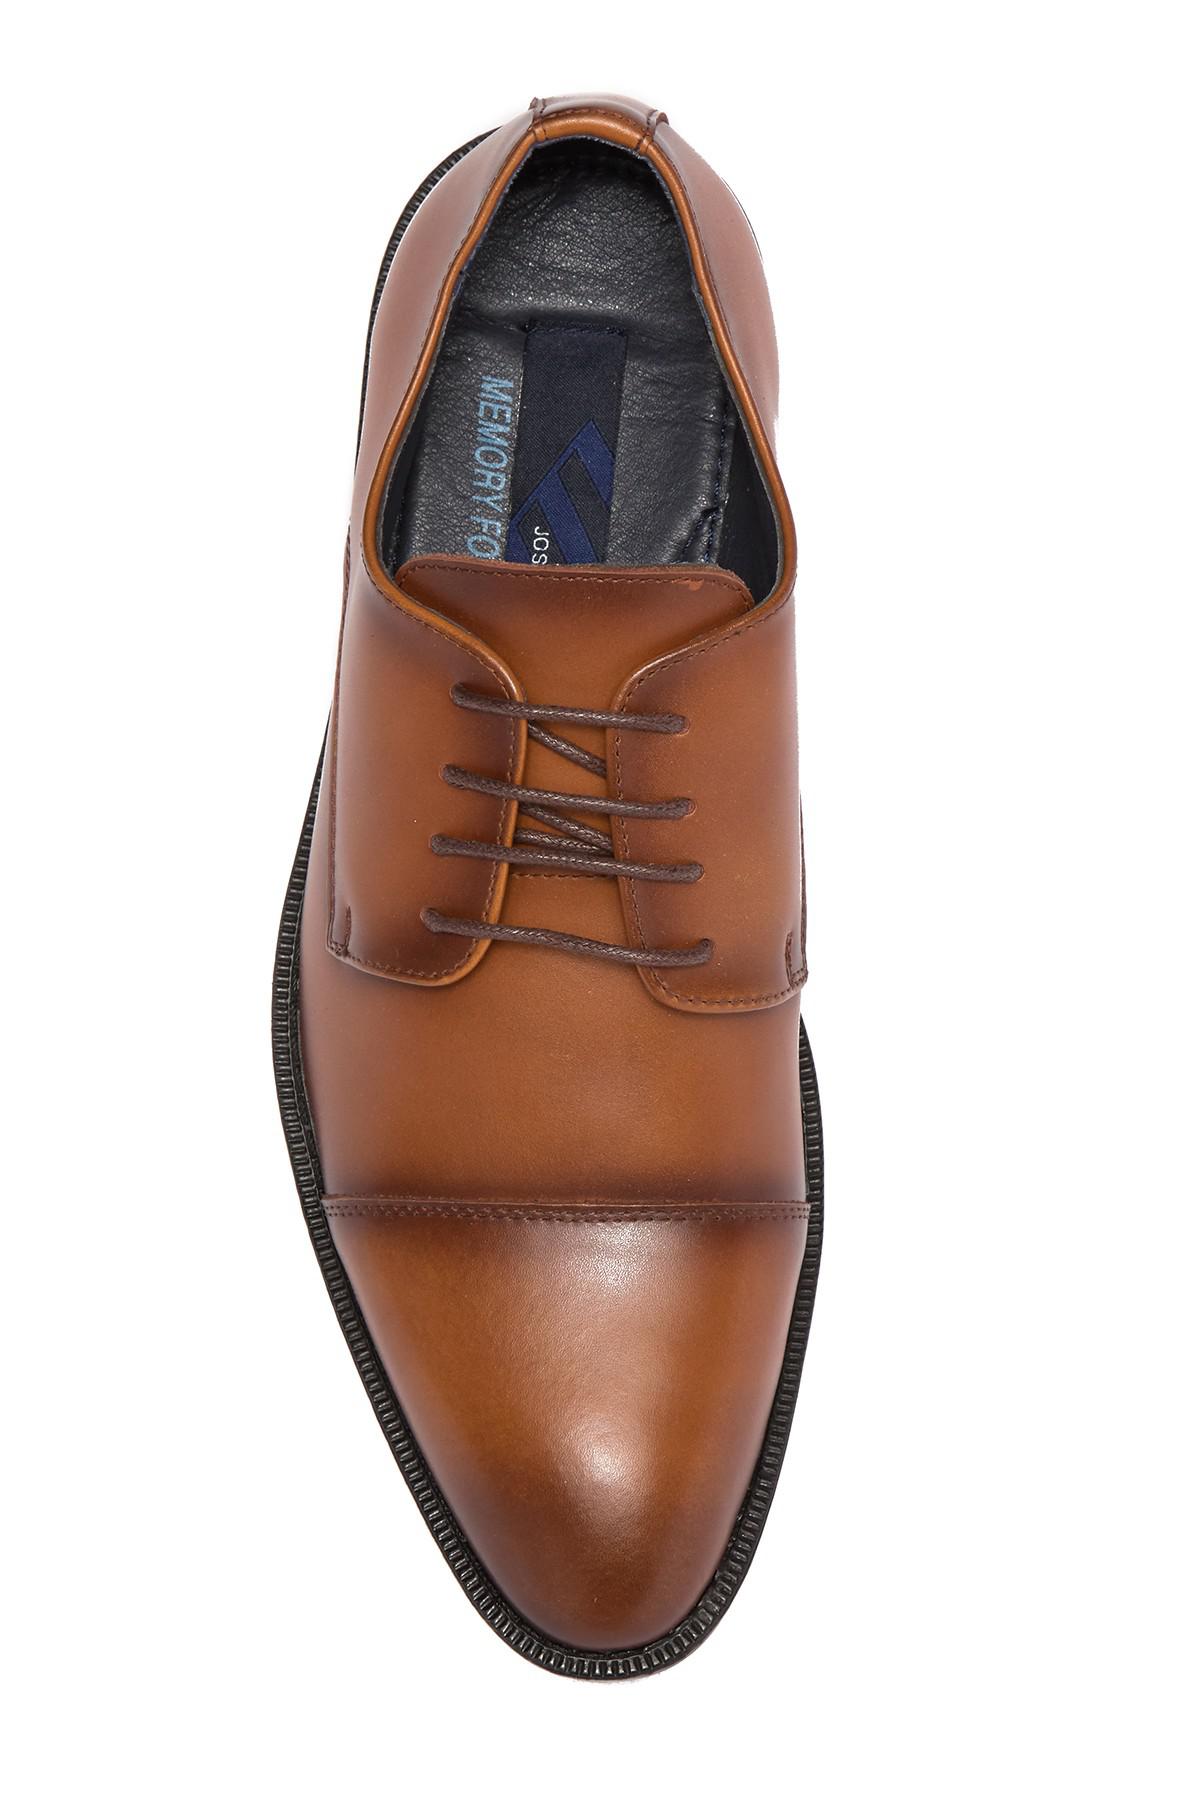 joseph abboud matteo men's leather oxford dress shoes